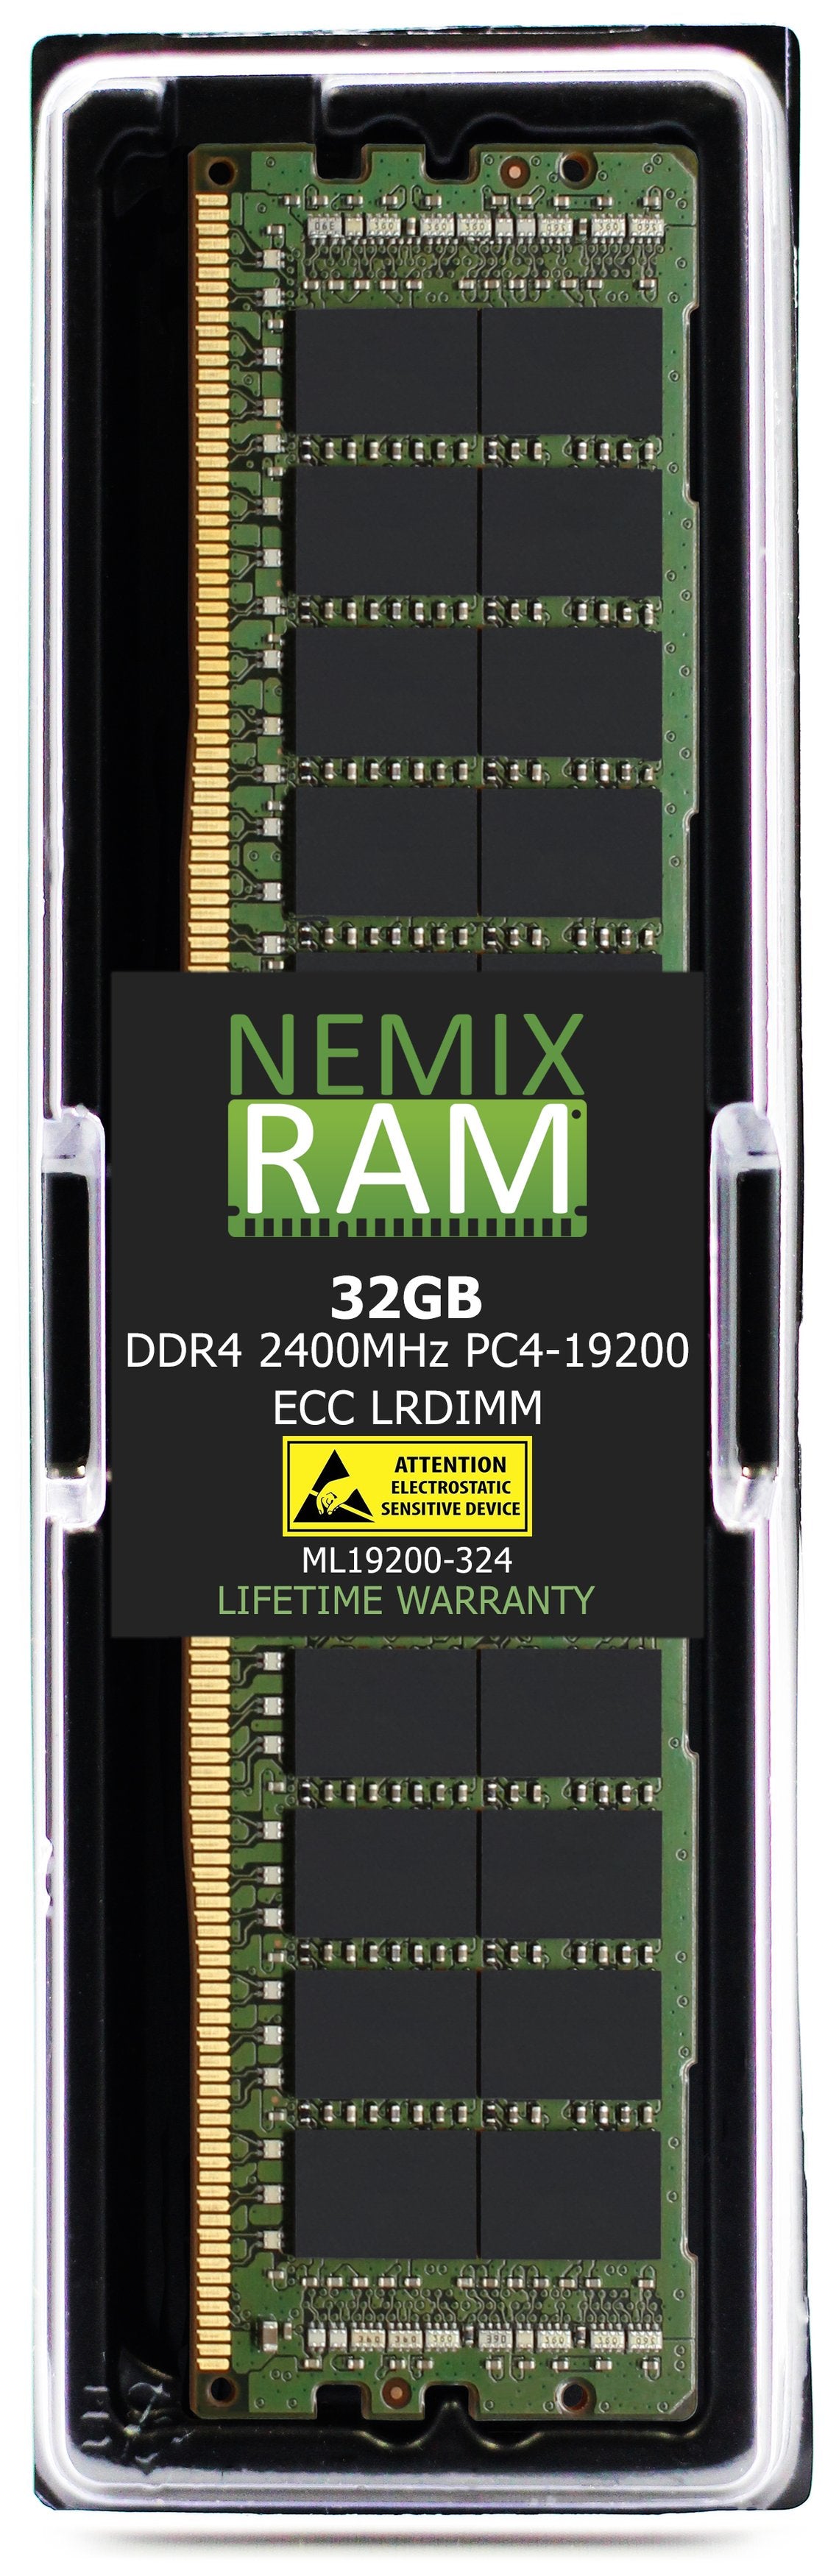 Hynix HMA84GL7MFR4N-UH 32GB DDR4 2400MHZ PC4-19200 LRDIMM Compatible Memory Module